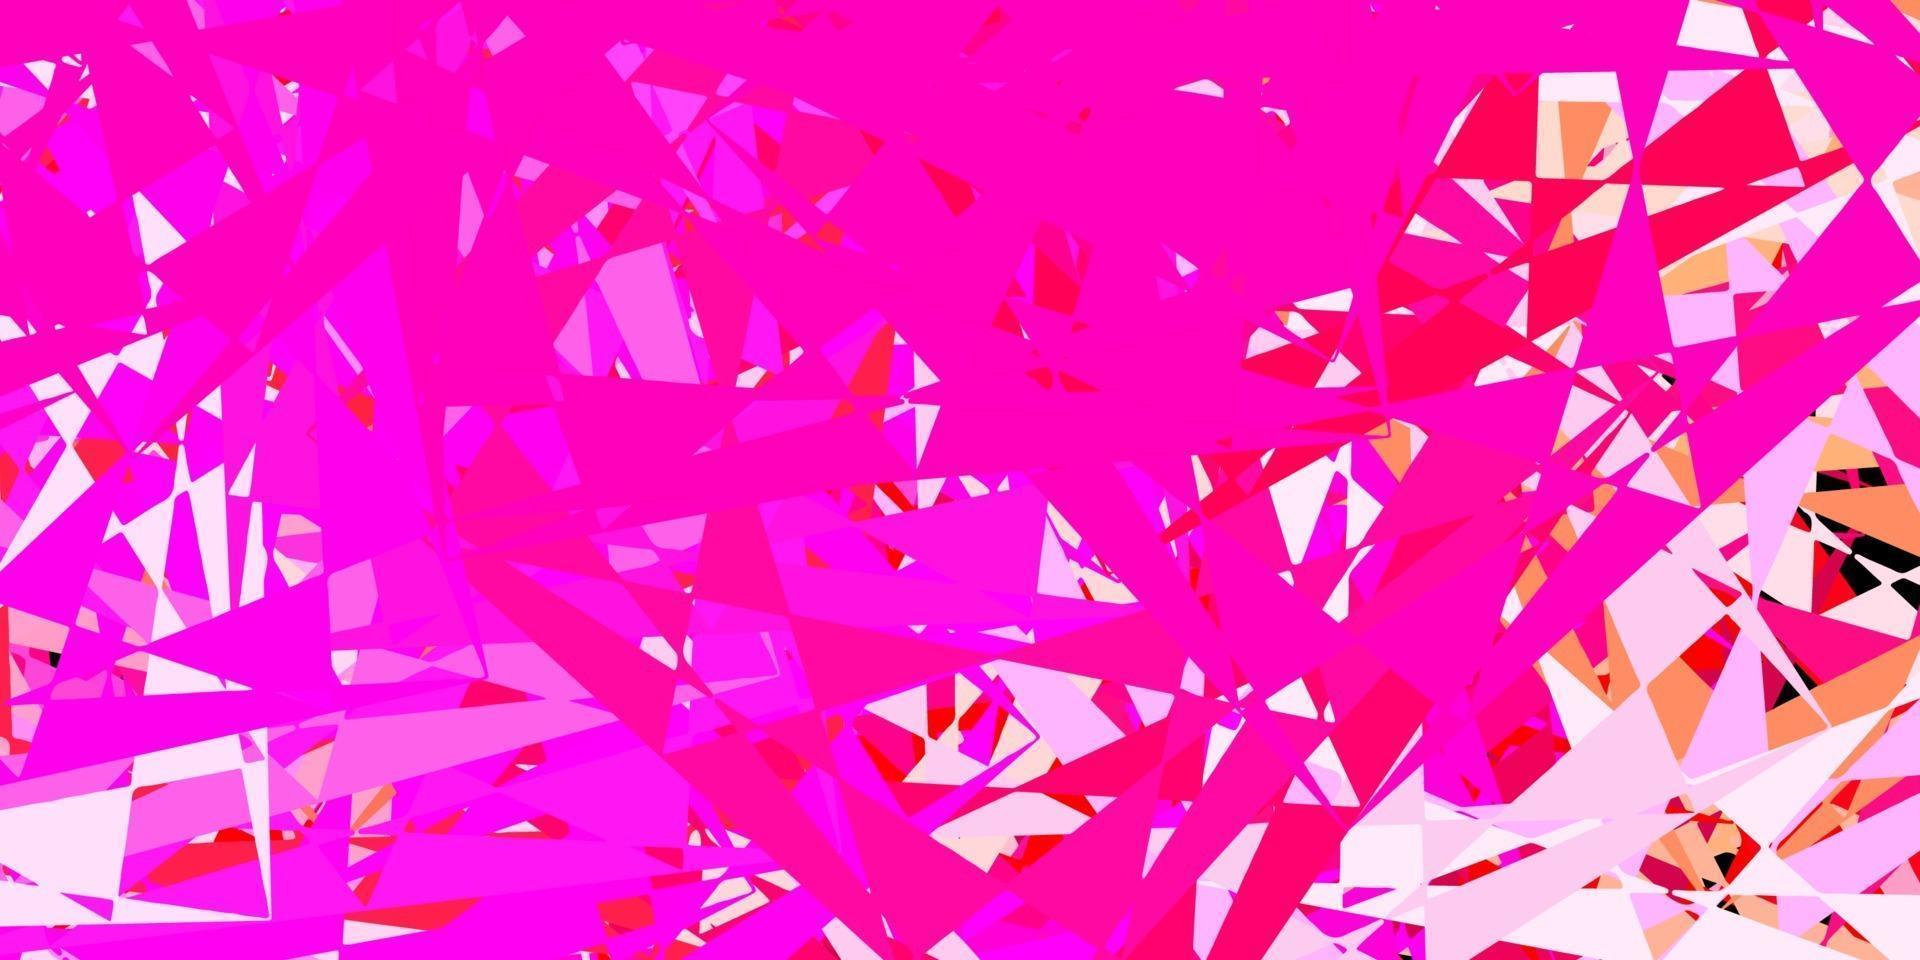 modello vettoriale rosa chiaro, giallo con forme poligonali.